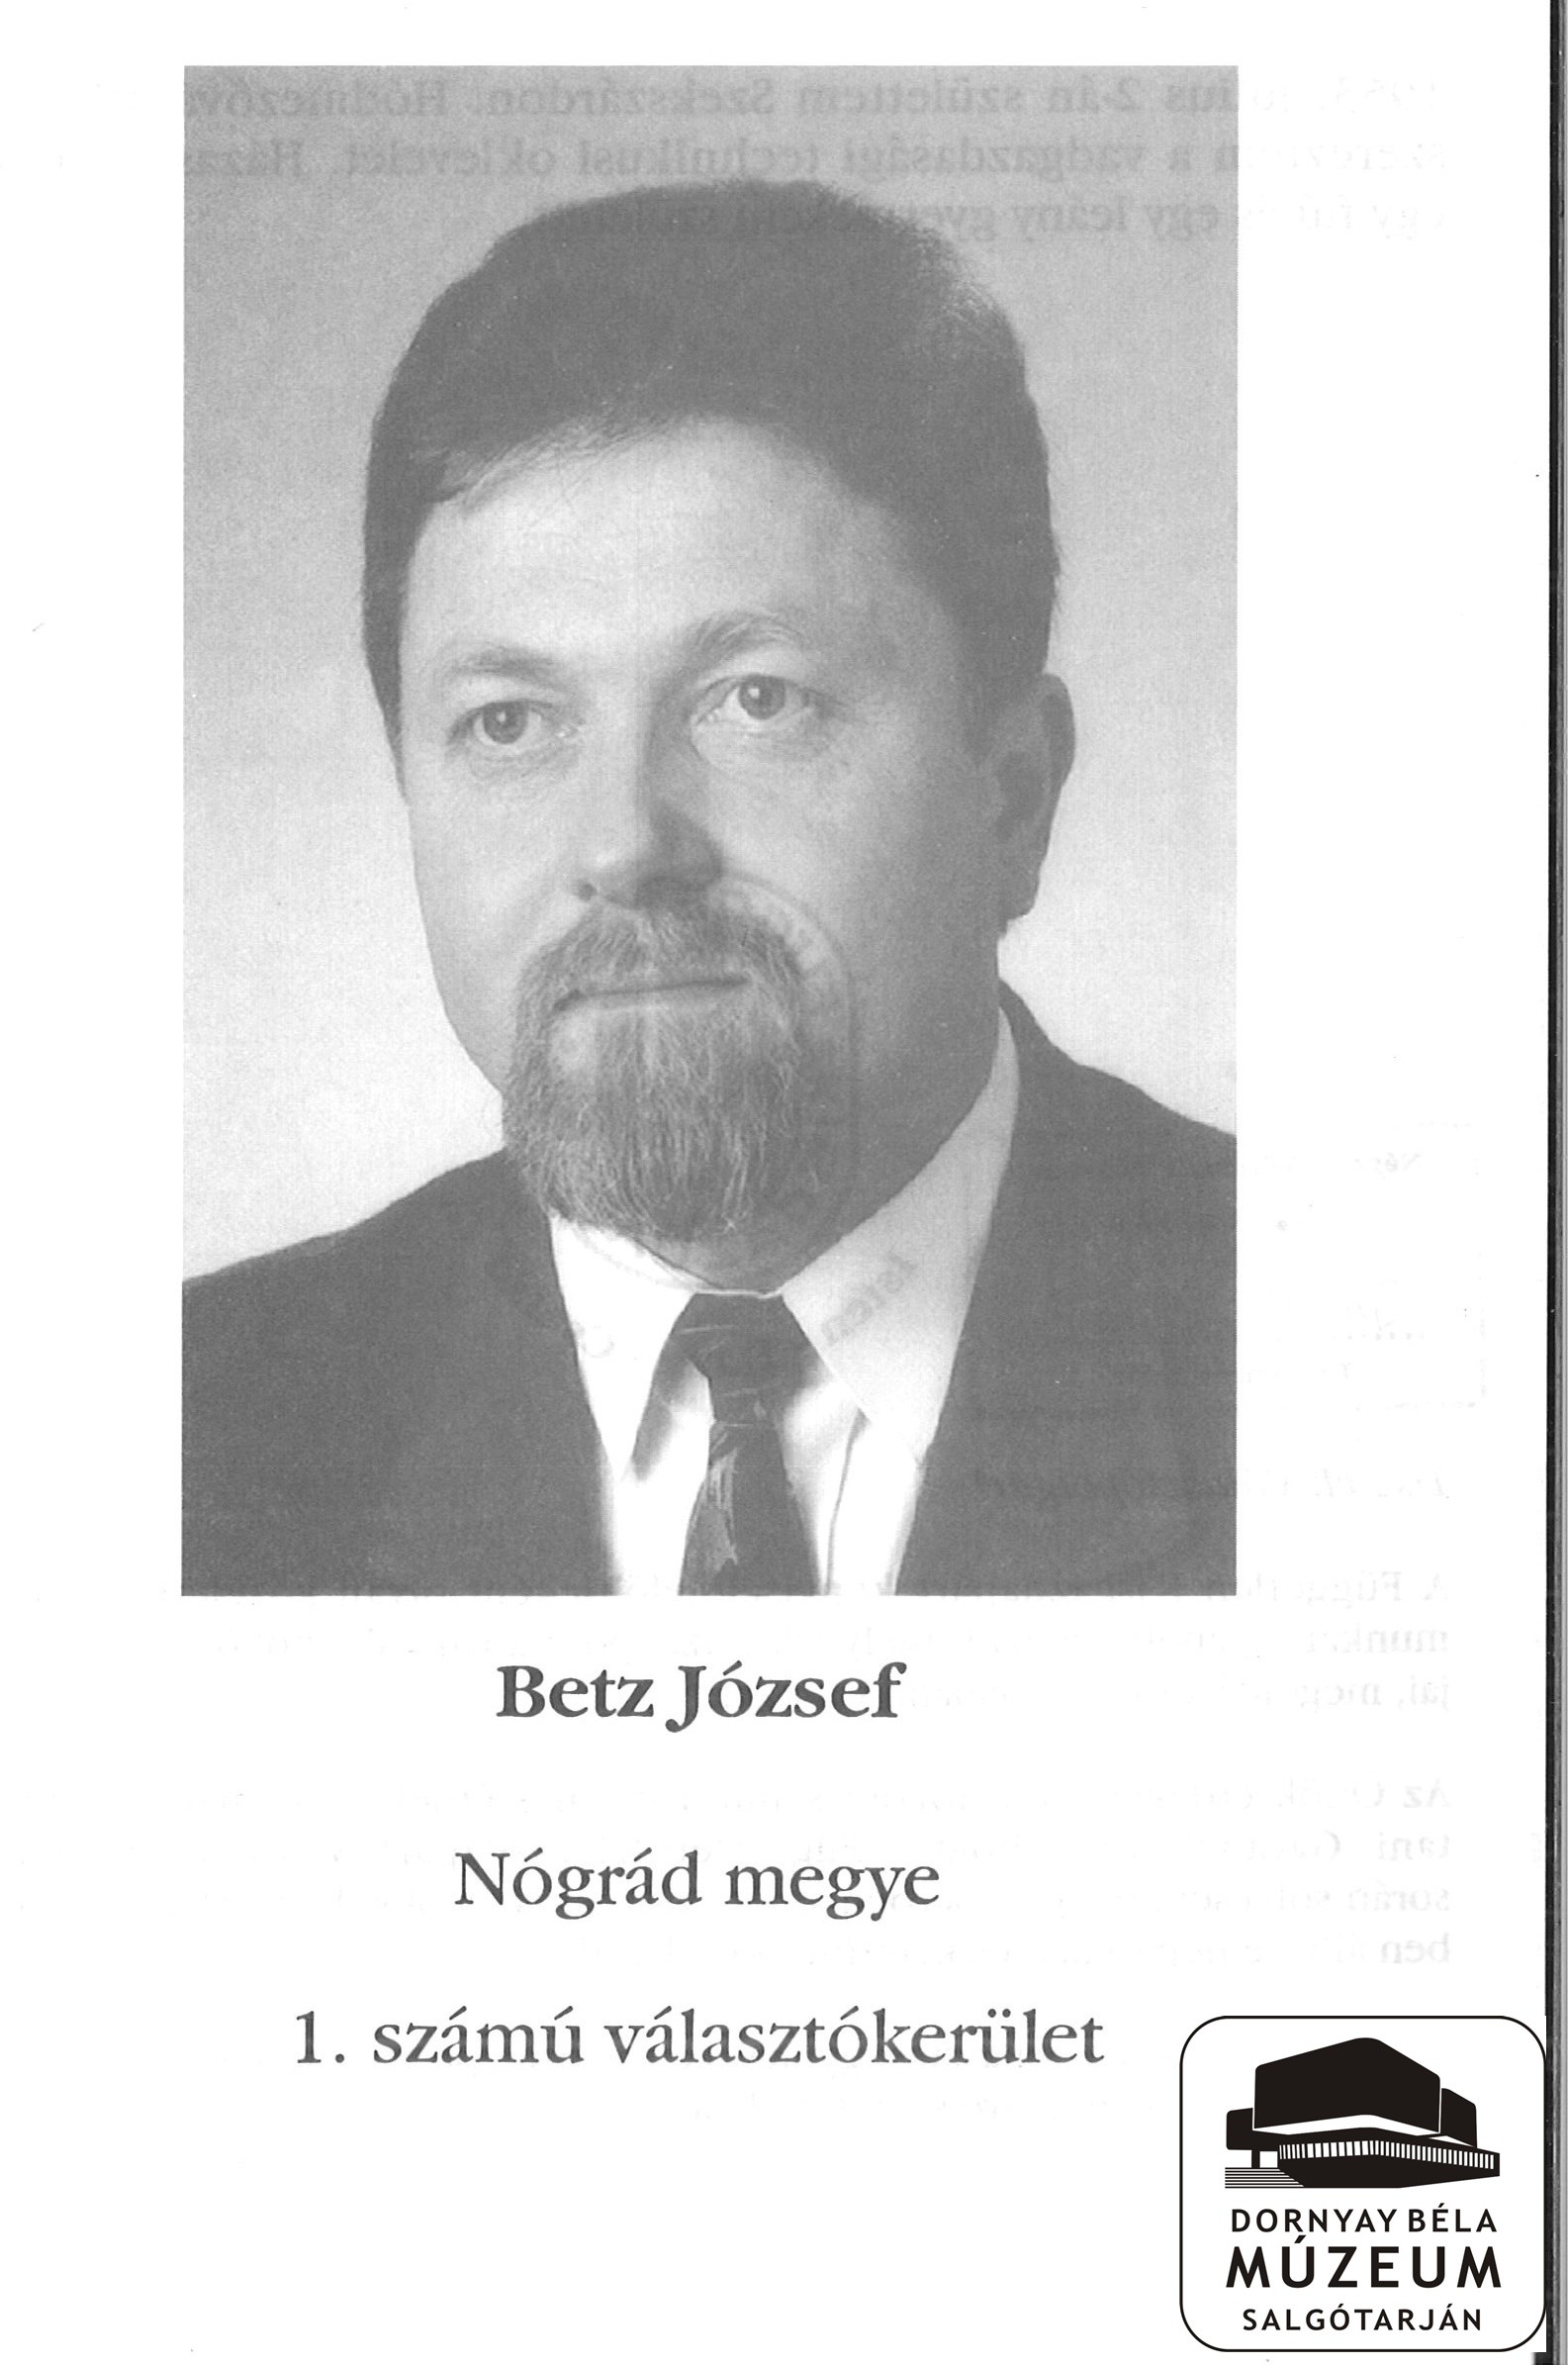 Betz József Nógrád megye 1.számú választókerület jelöltjének fényképe, hátoldalon életrajza FKGP (Dornyay Béla Múzeum, Salgótarján CC BY-NC-SA)